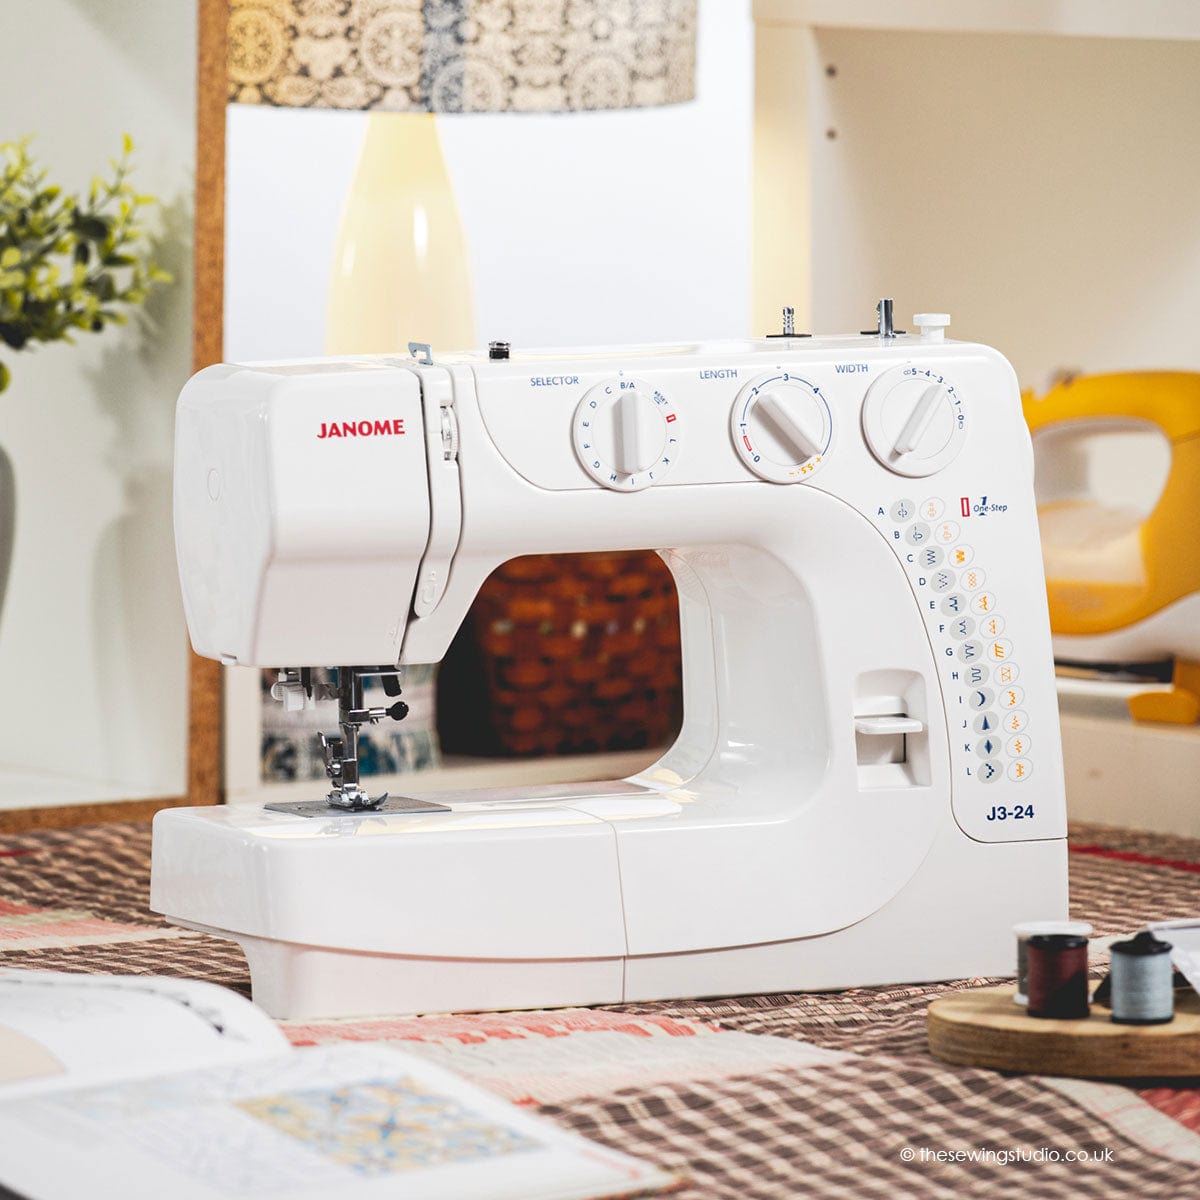 Janome J3-24 Sewing Machine Lifestyle